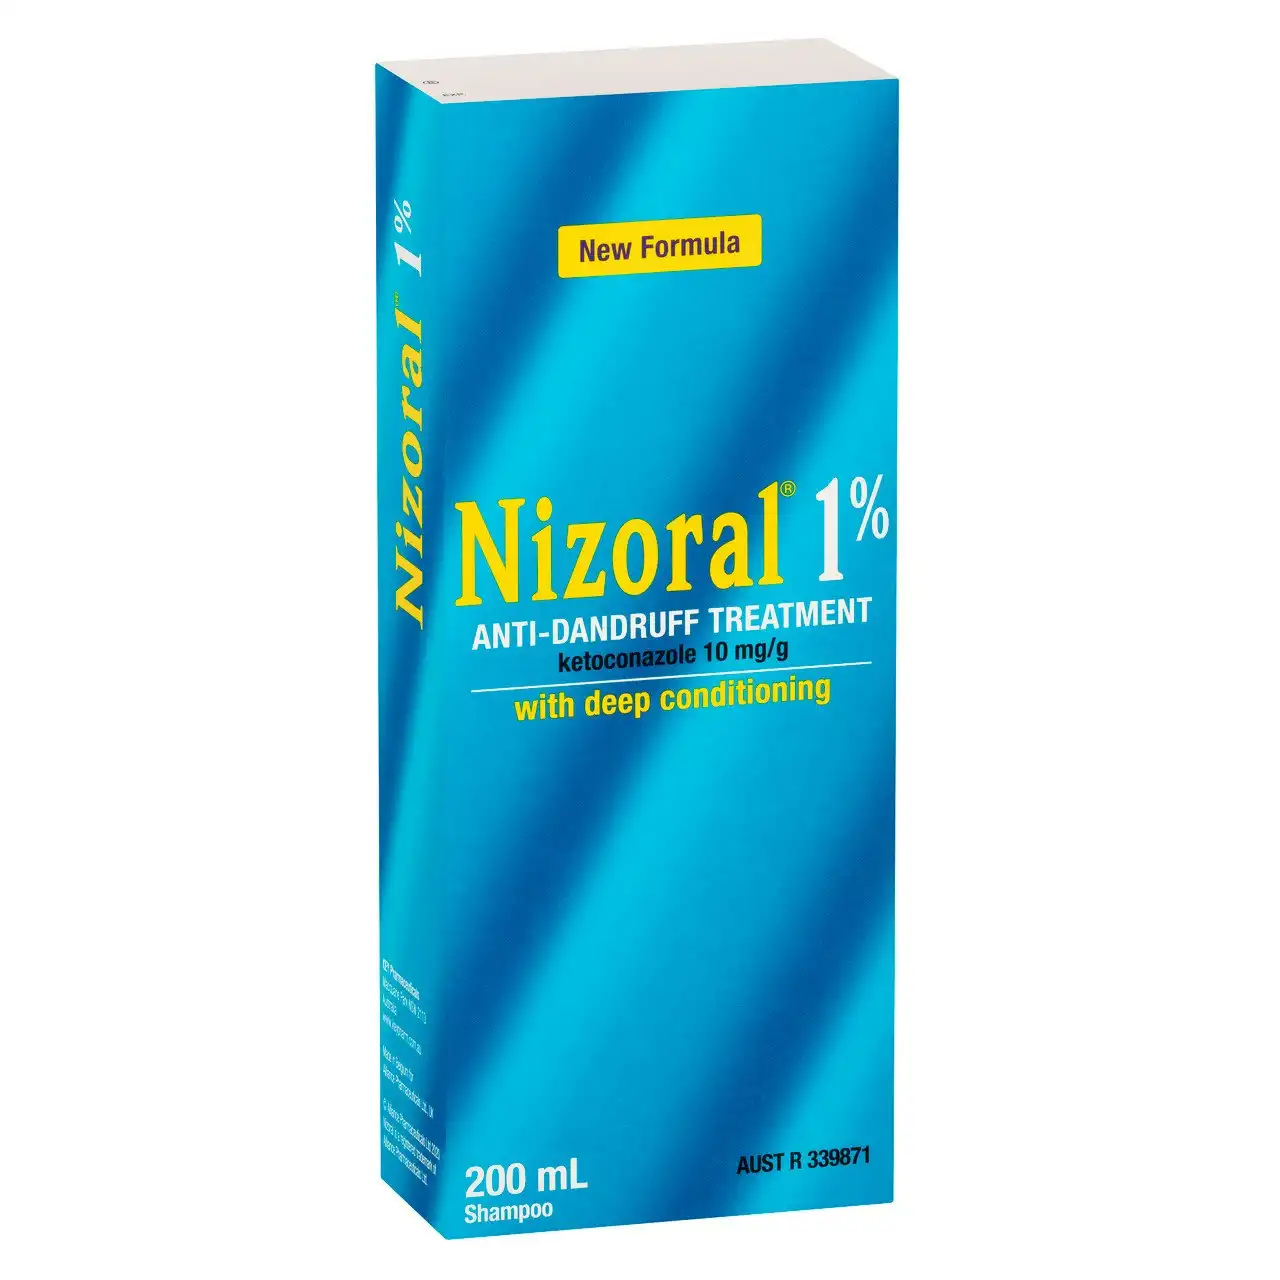 NIZORAL 1% Anti-Dandruff Treatment 200mL